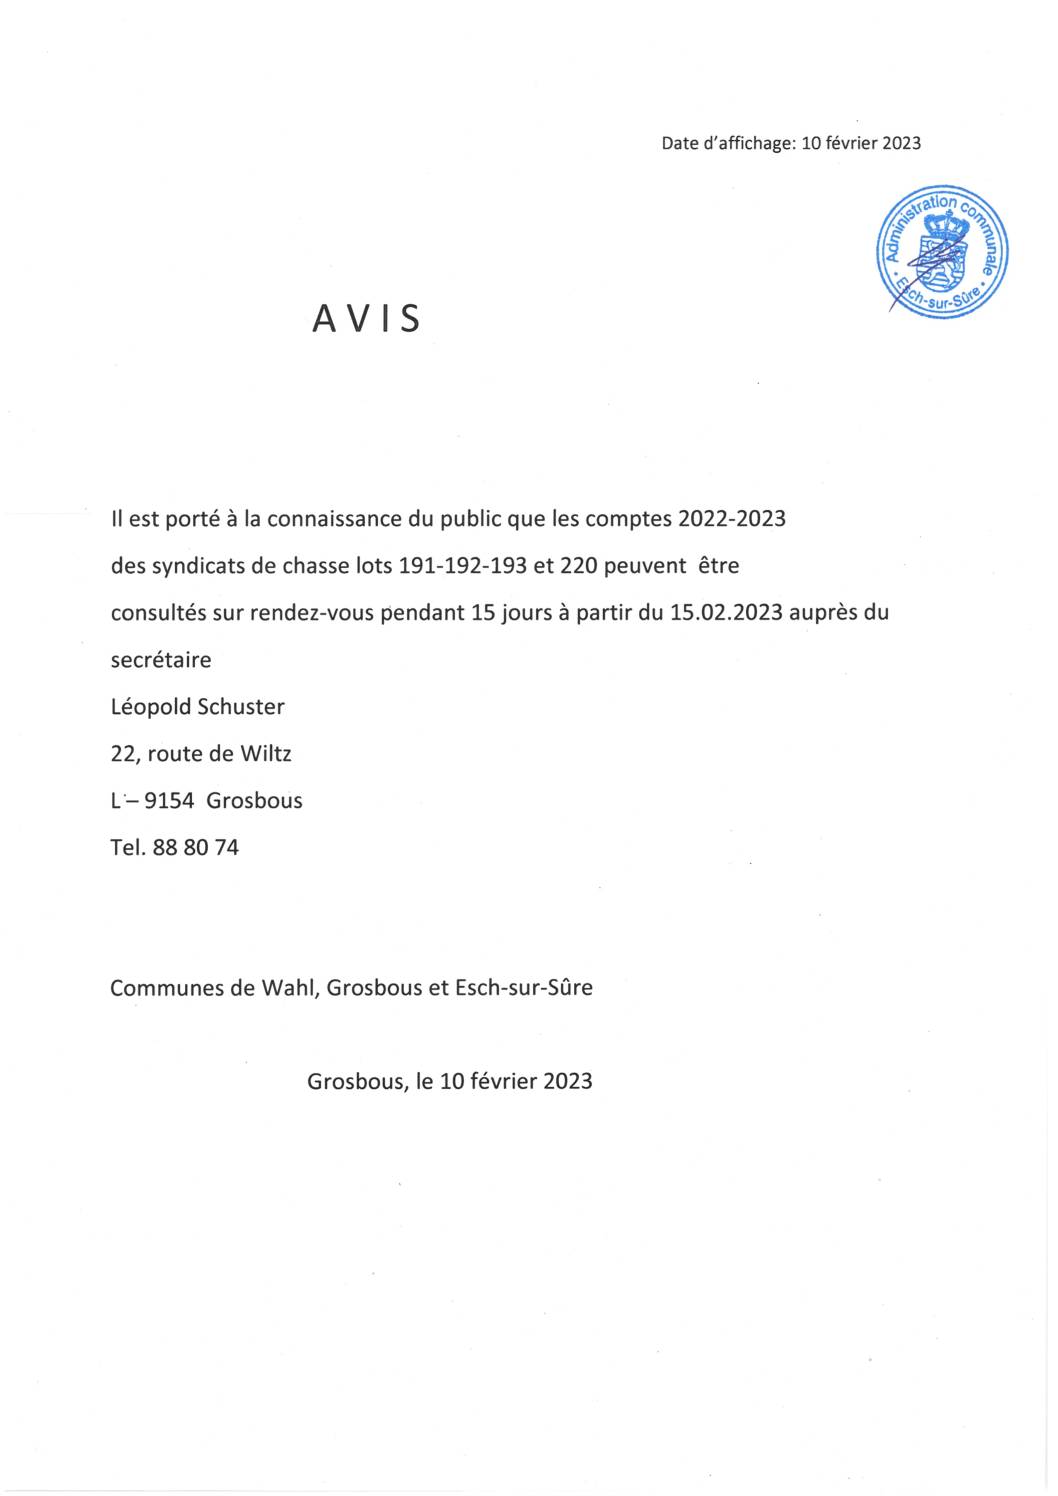 2023.02.10_Syndicat de Chasse, lot 191, 192,193 et 220 - Publication des comptes 2022-2023